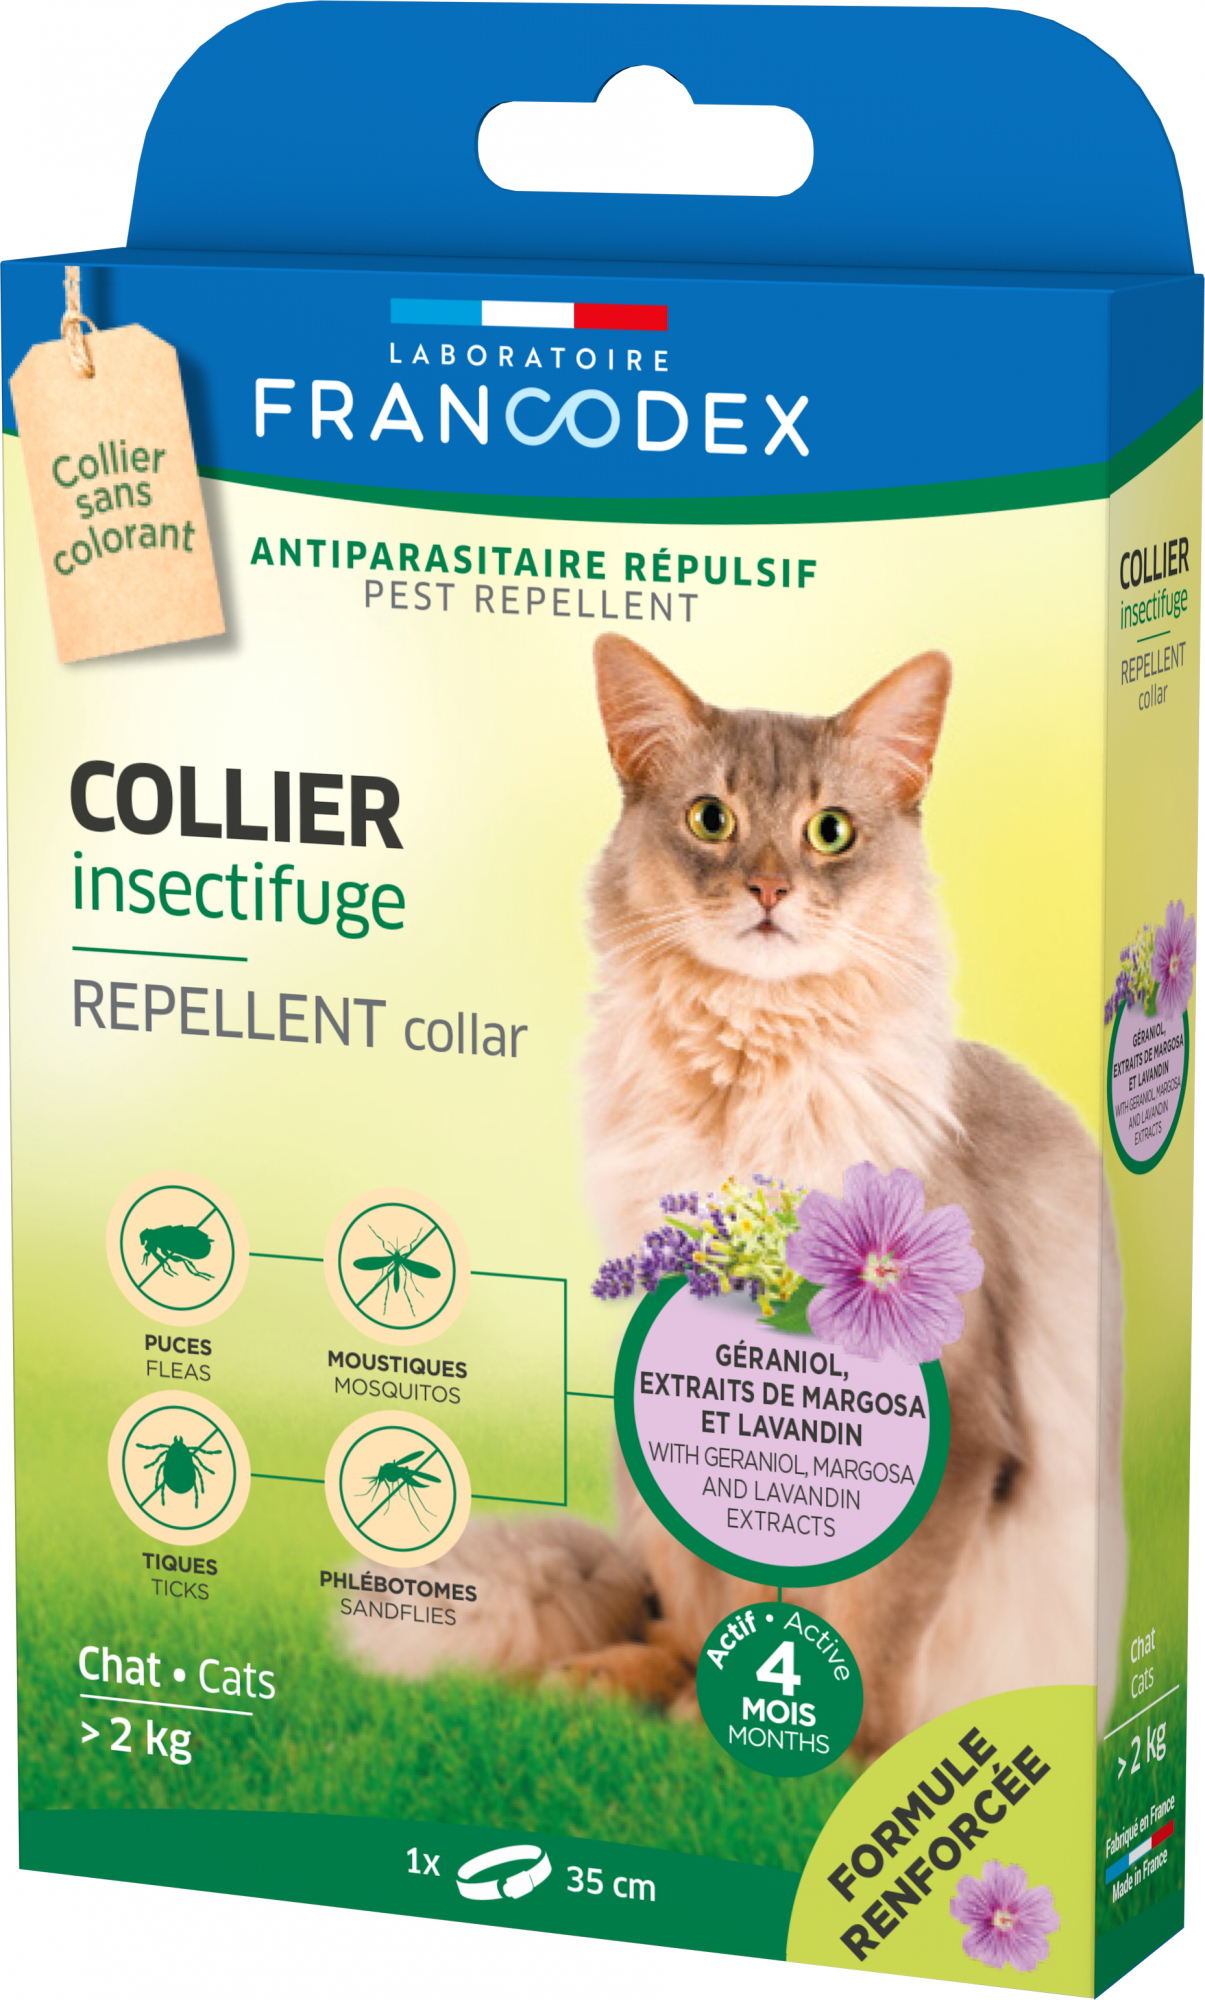 Collari anti-insetto Francodex per gatti e gattini